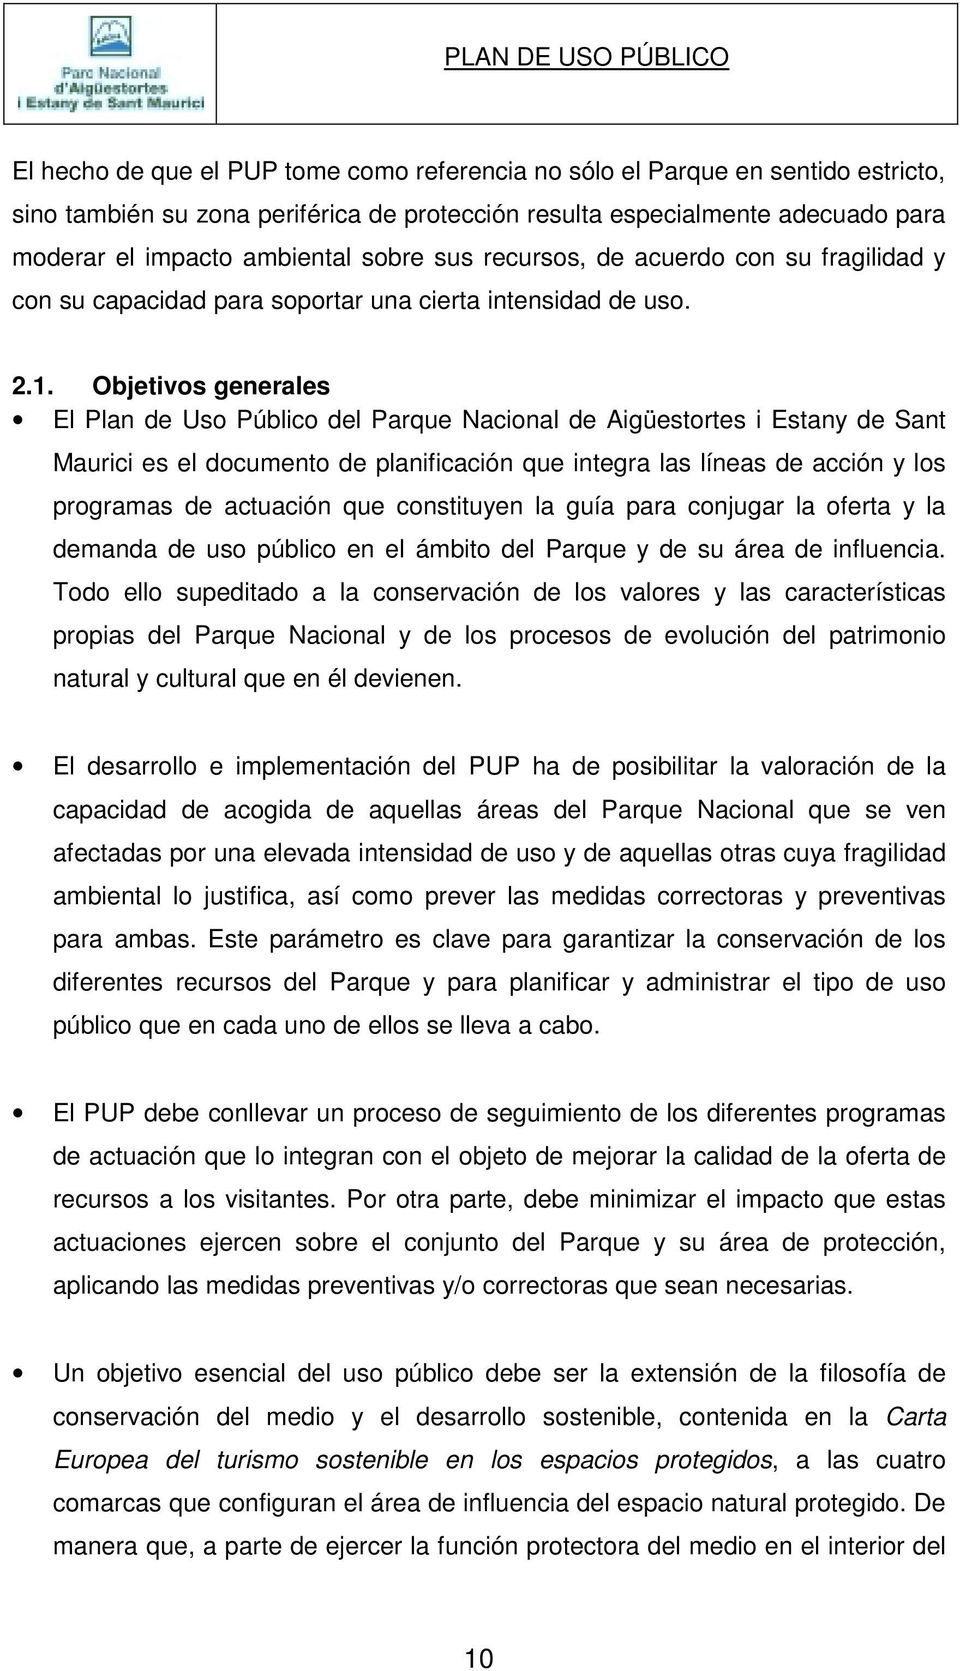 Objetivos generales El Plan de Uso Público del Parque Nacional de Aigüestortes i Estany de Sant Maurici es el documento de planificación que integra las líneas de acción y los programas de actuación